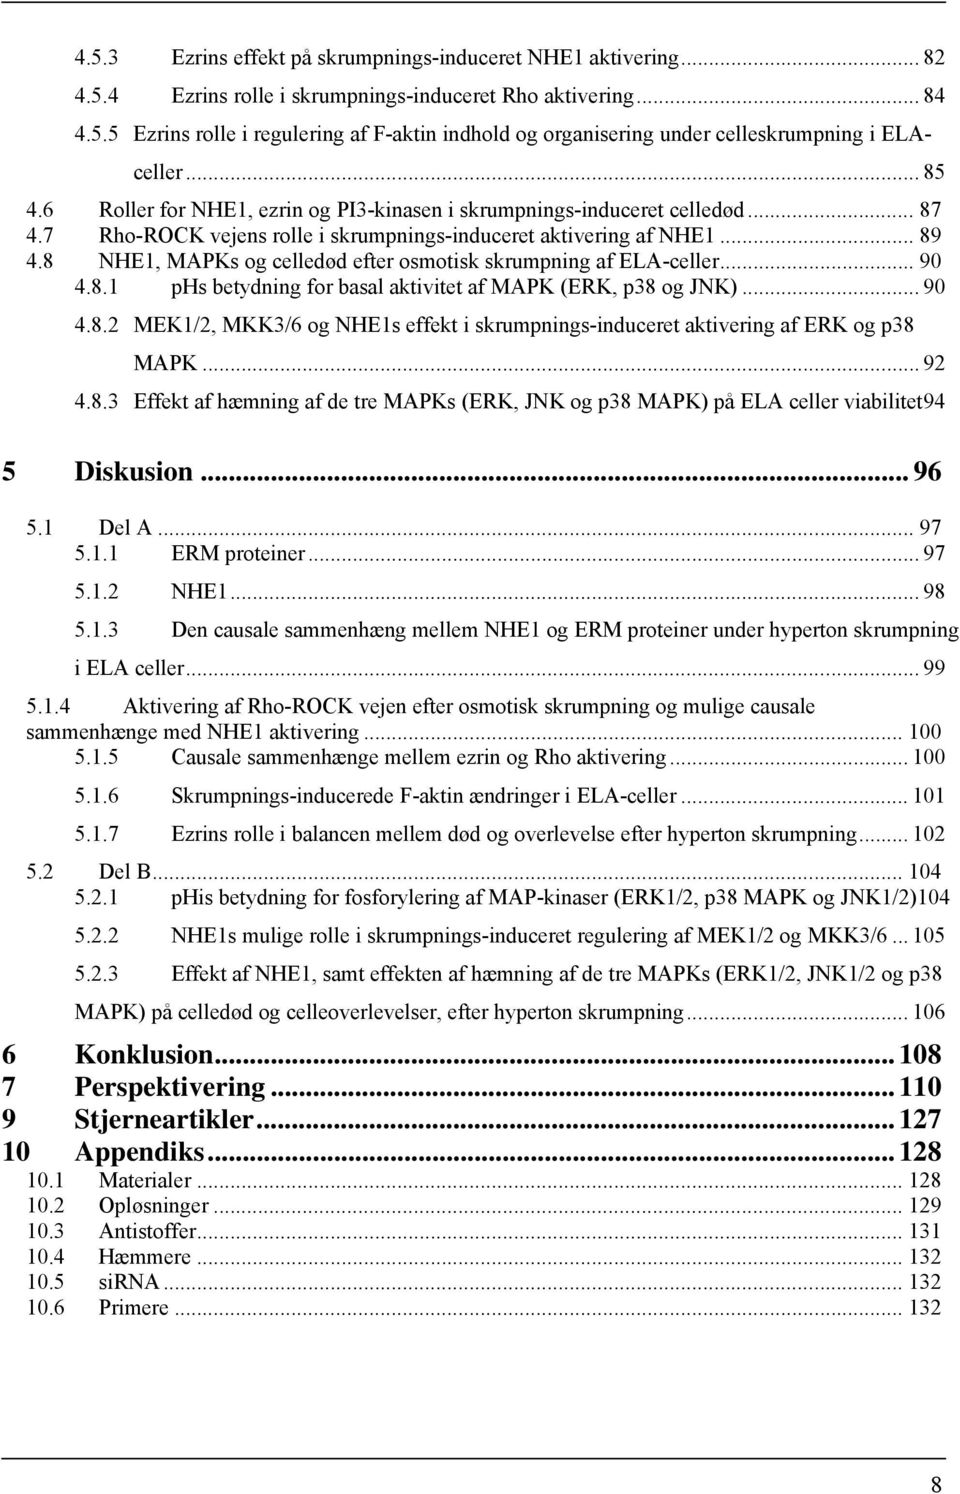 8 NHE1, MAPKs og celledød efter osmotisk skrumpning af ELA-celler... 90 4.8.1 phs betydning for basal aktivitet af MAPK (ERK, p38 og JNK)... 90 4.8.2 MEK1/2, MKK3/6 og NHE1s effekt i skrumpnings-induceret aktivering af ERK og p38 MAPK.